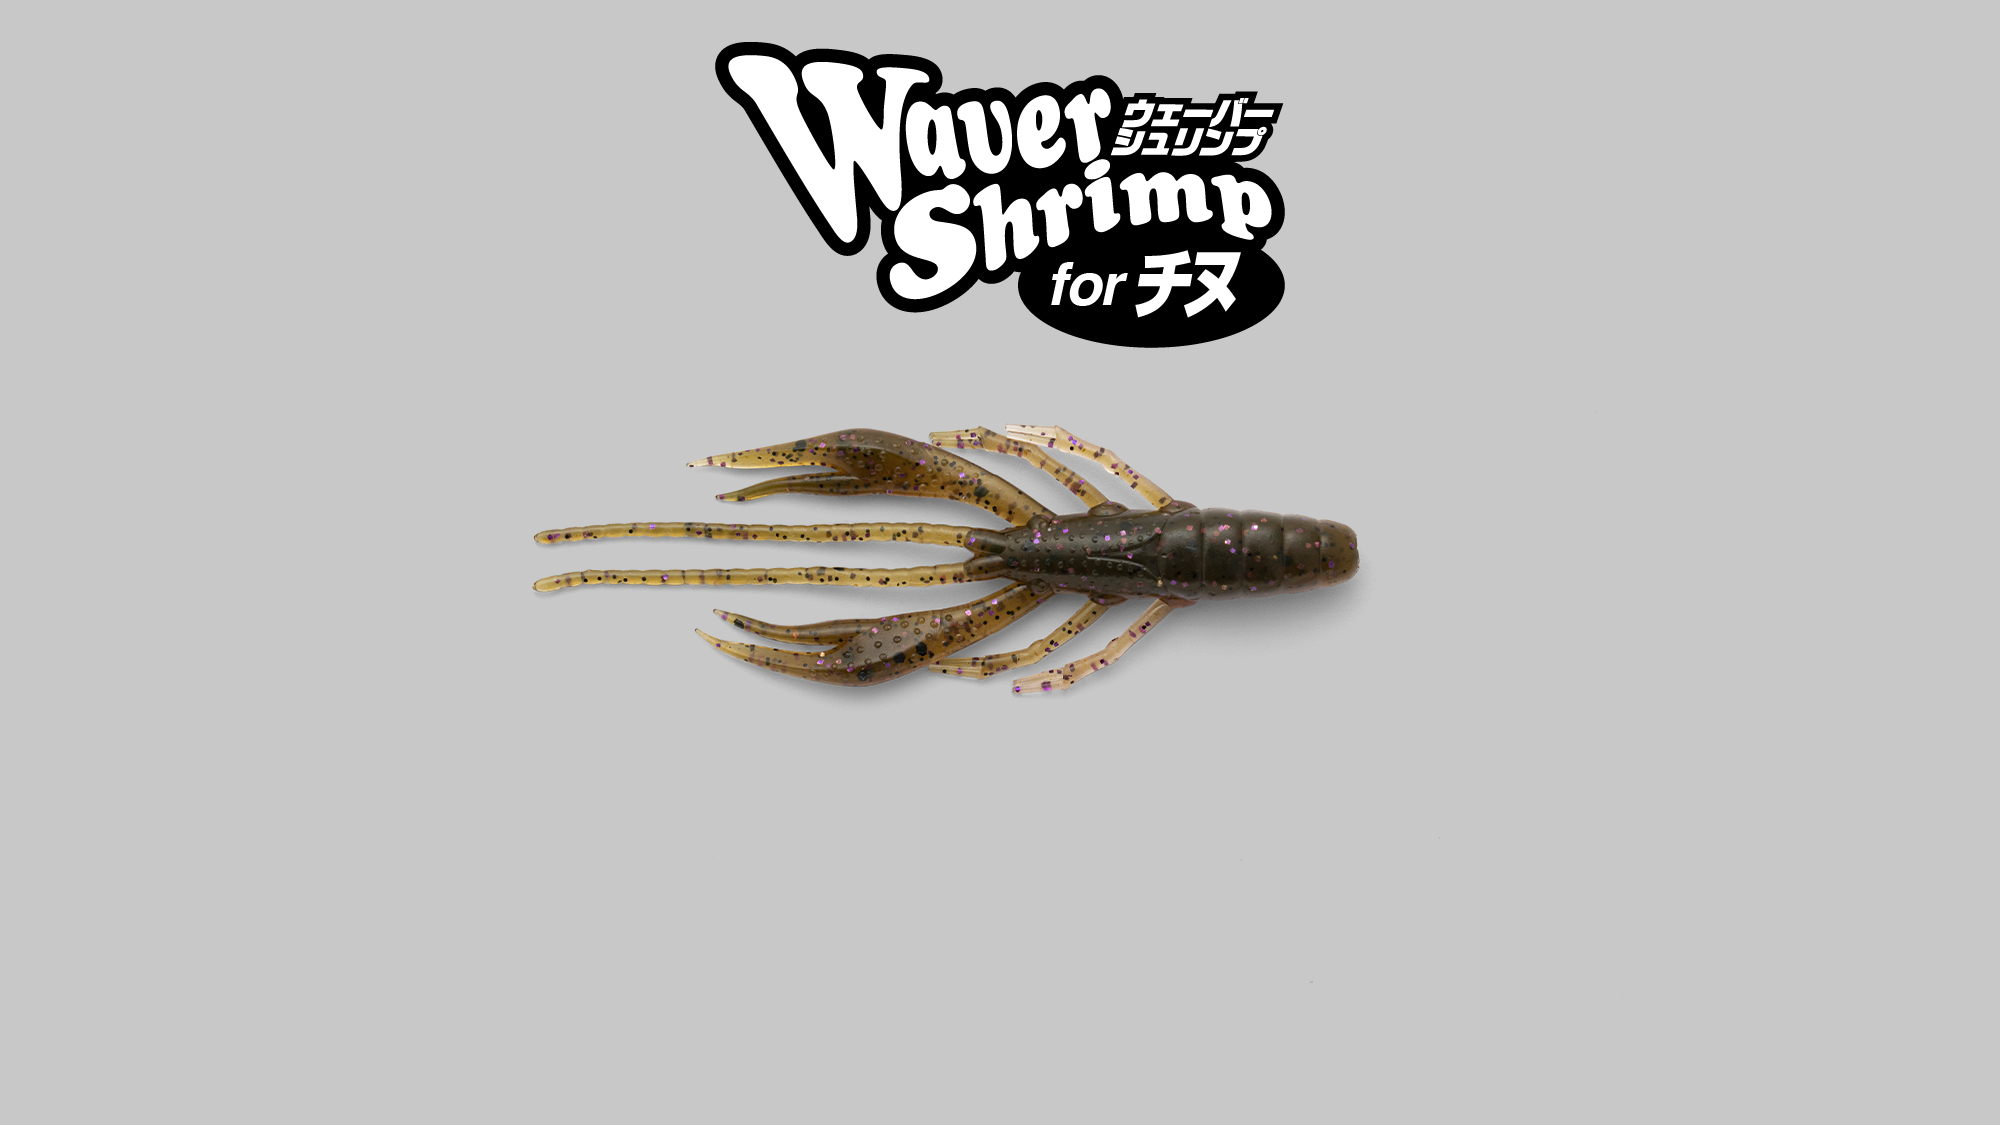 ウェーバーシュリンプ 2.8″ クロダイver Waver Shrimp 2.8″ for KURODAI / ウェーバーシュリンプ 2.8″ クロダイver